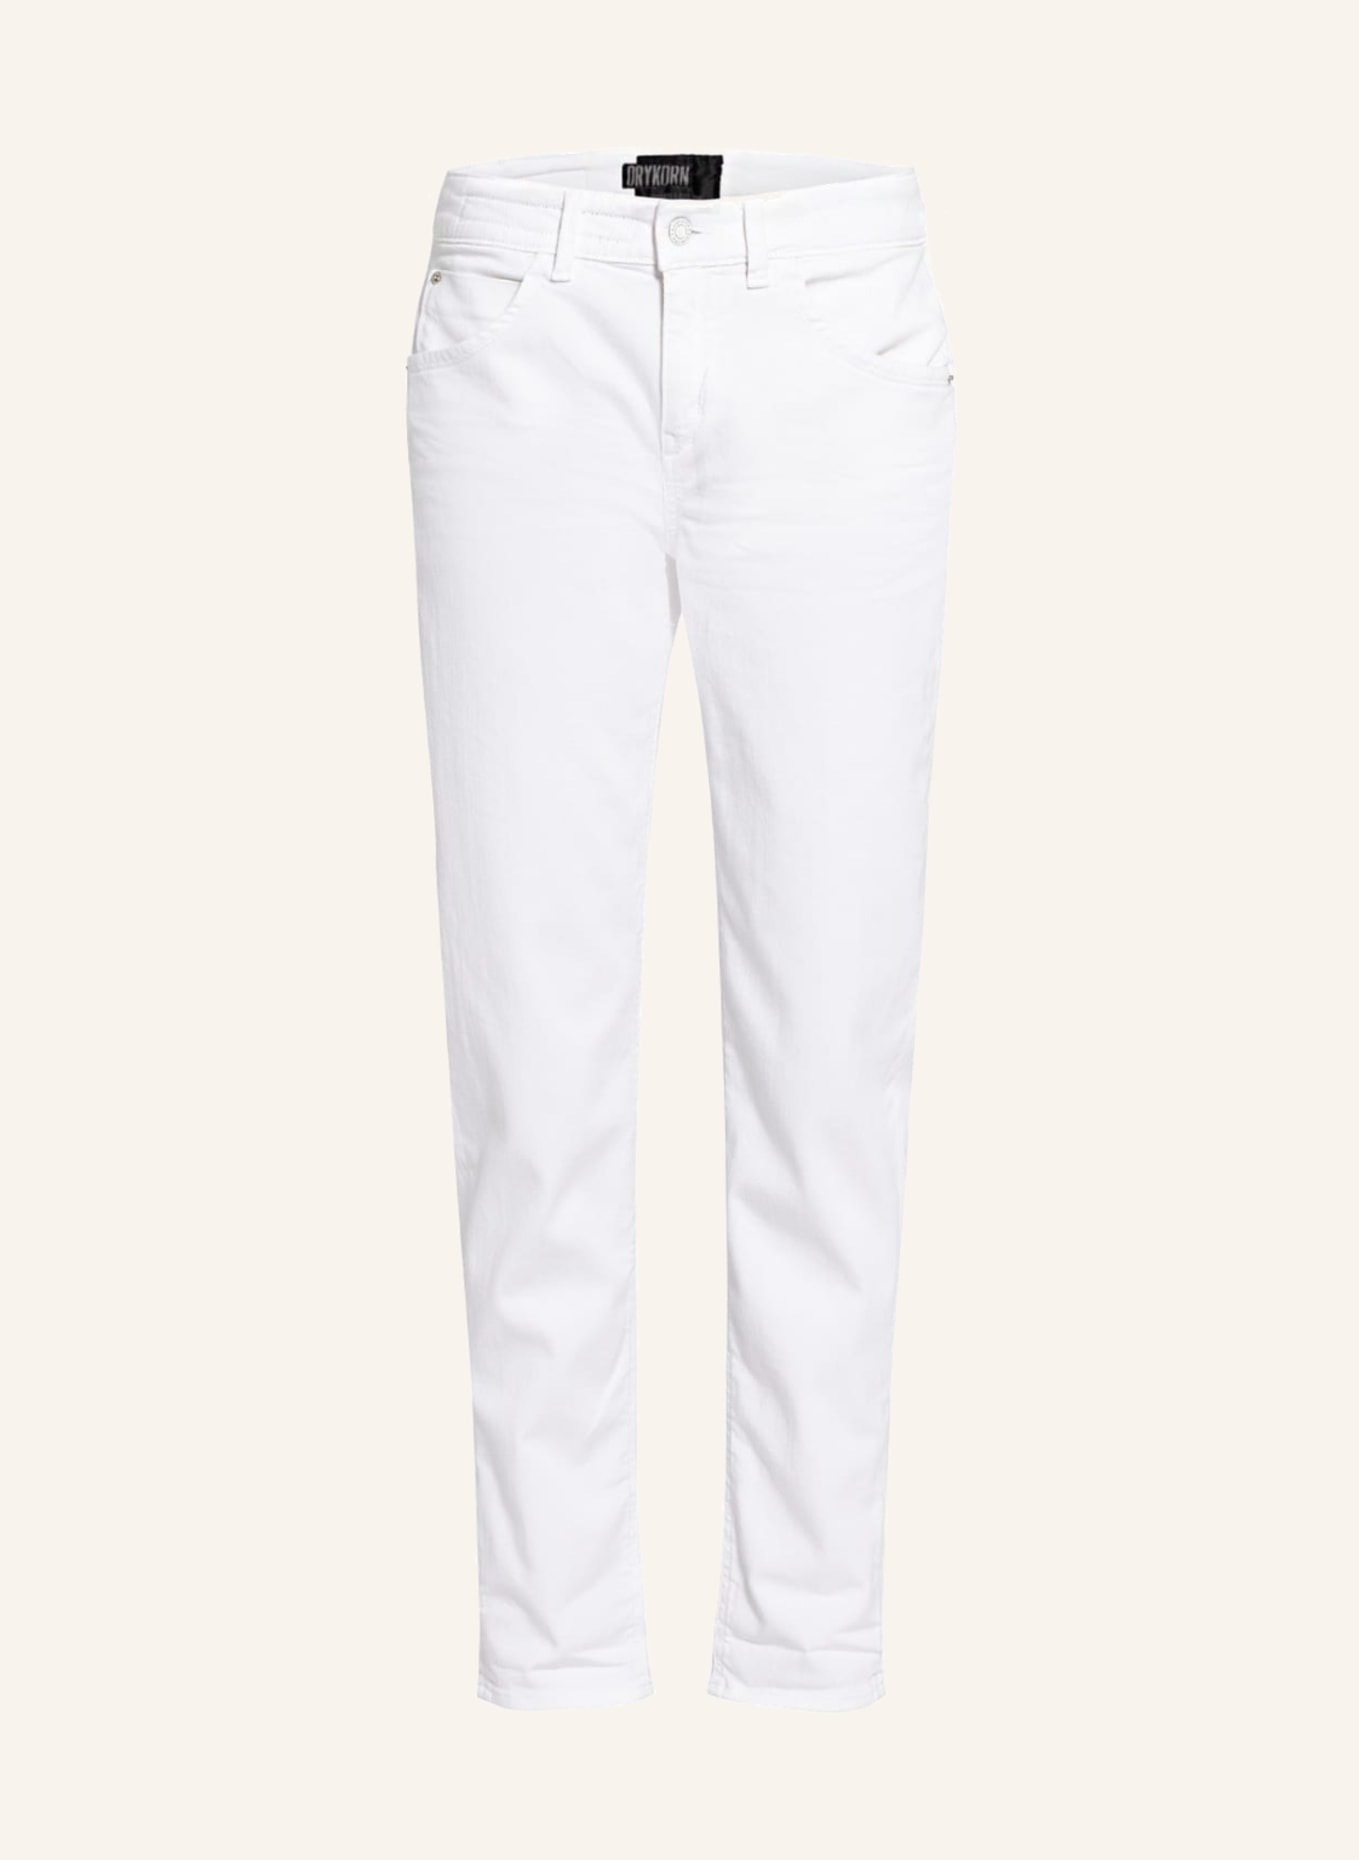 DRYKORN Boyfriend Jeans LIKE, Farbe: 6000 weiss (Bild 1)